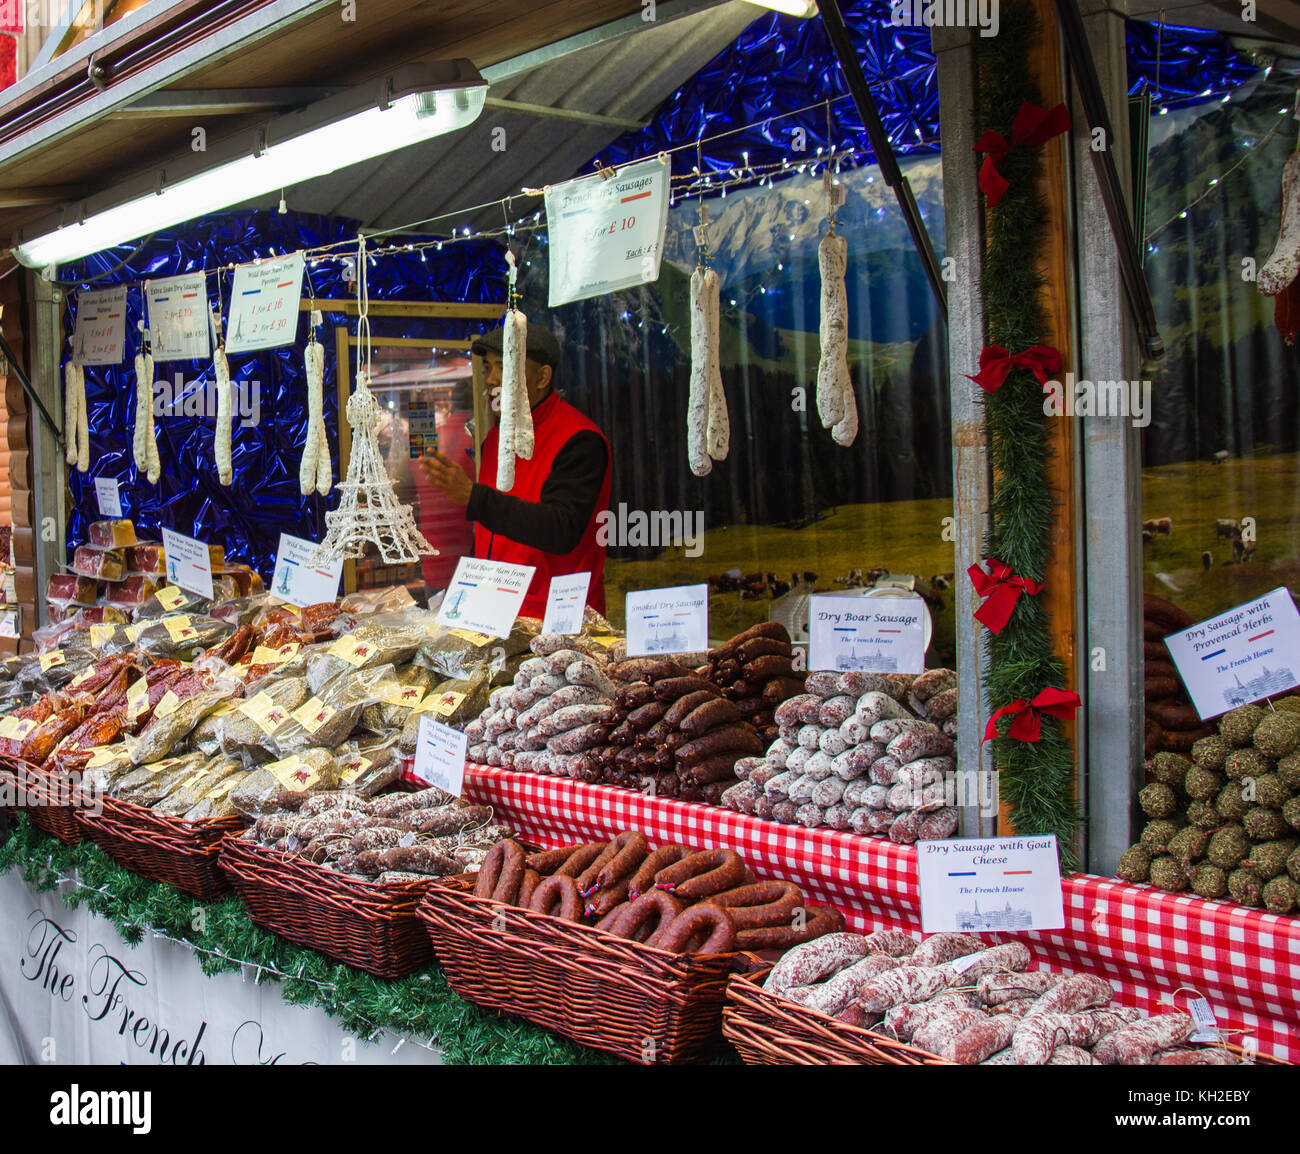 Pilas de diferentes tipos de unión salchichas en un stand en la Unión Mercado navideño en la Plaza Albert, Manchester, Reino Unido adoptó el 11 Nov 2017 Foto de stock